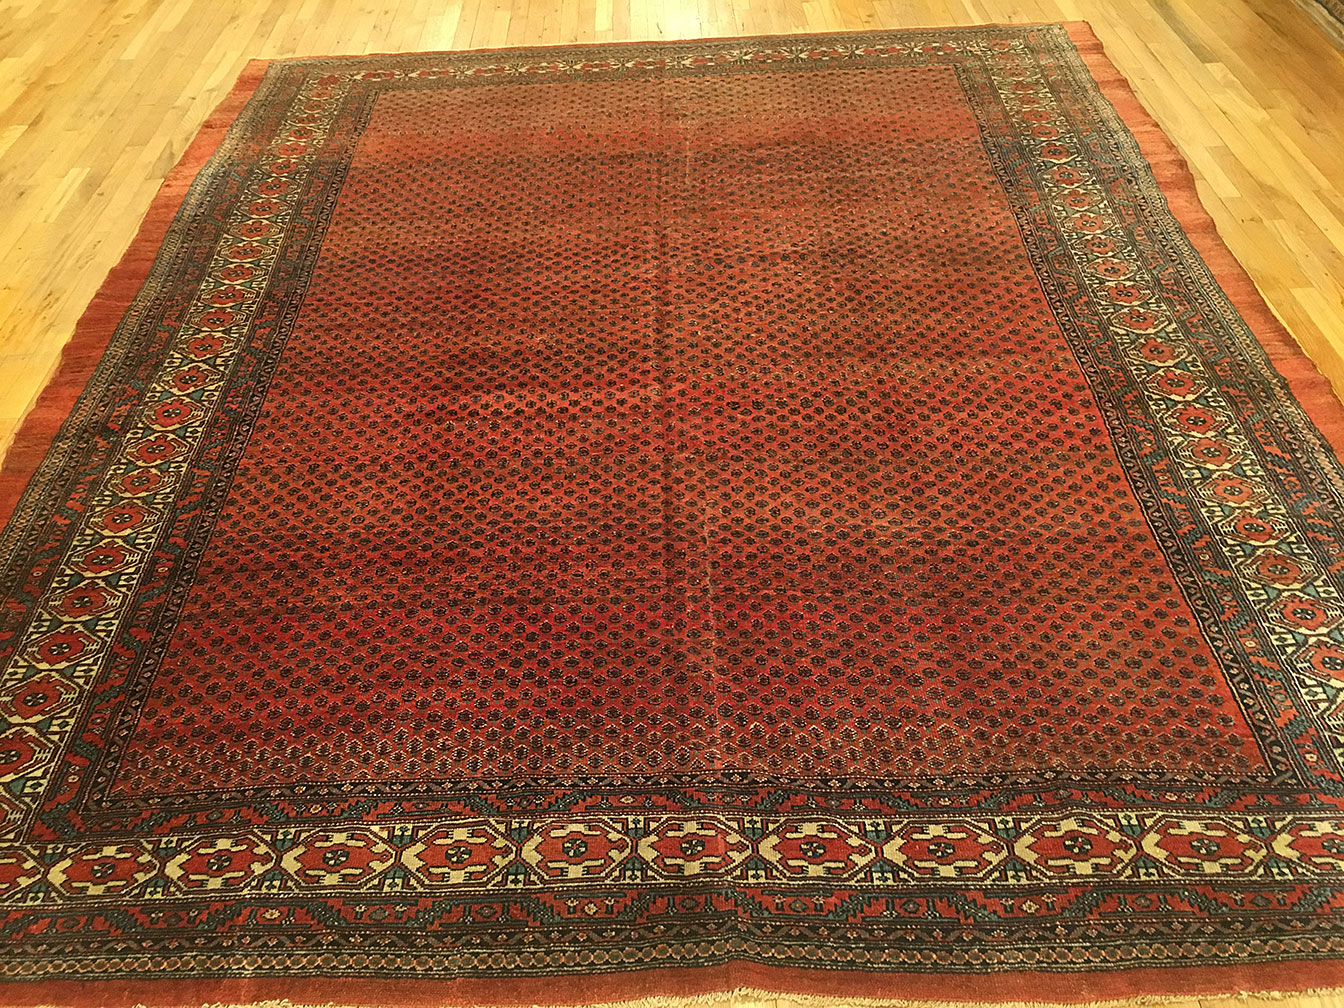 Vintage serab Carpet - # 53417